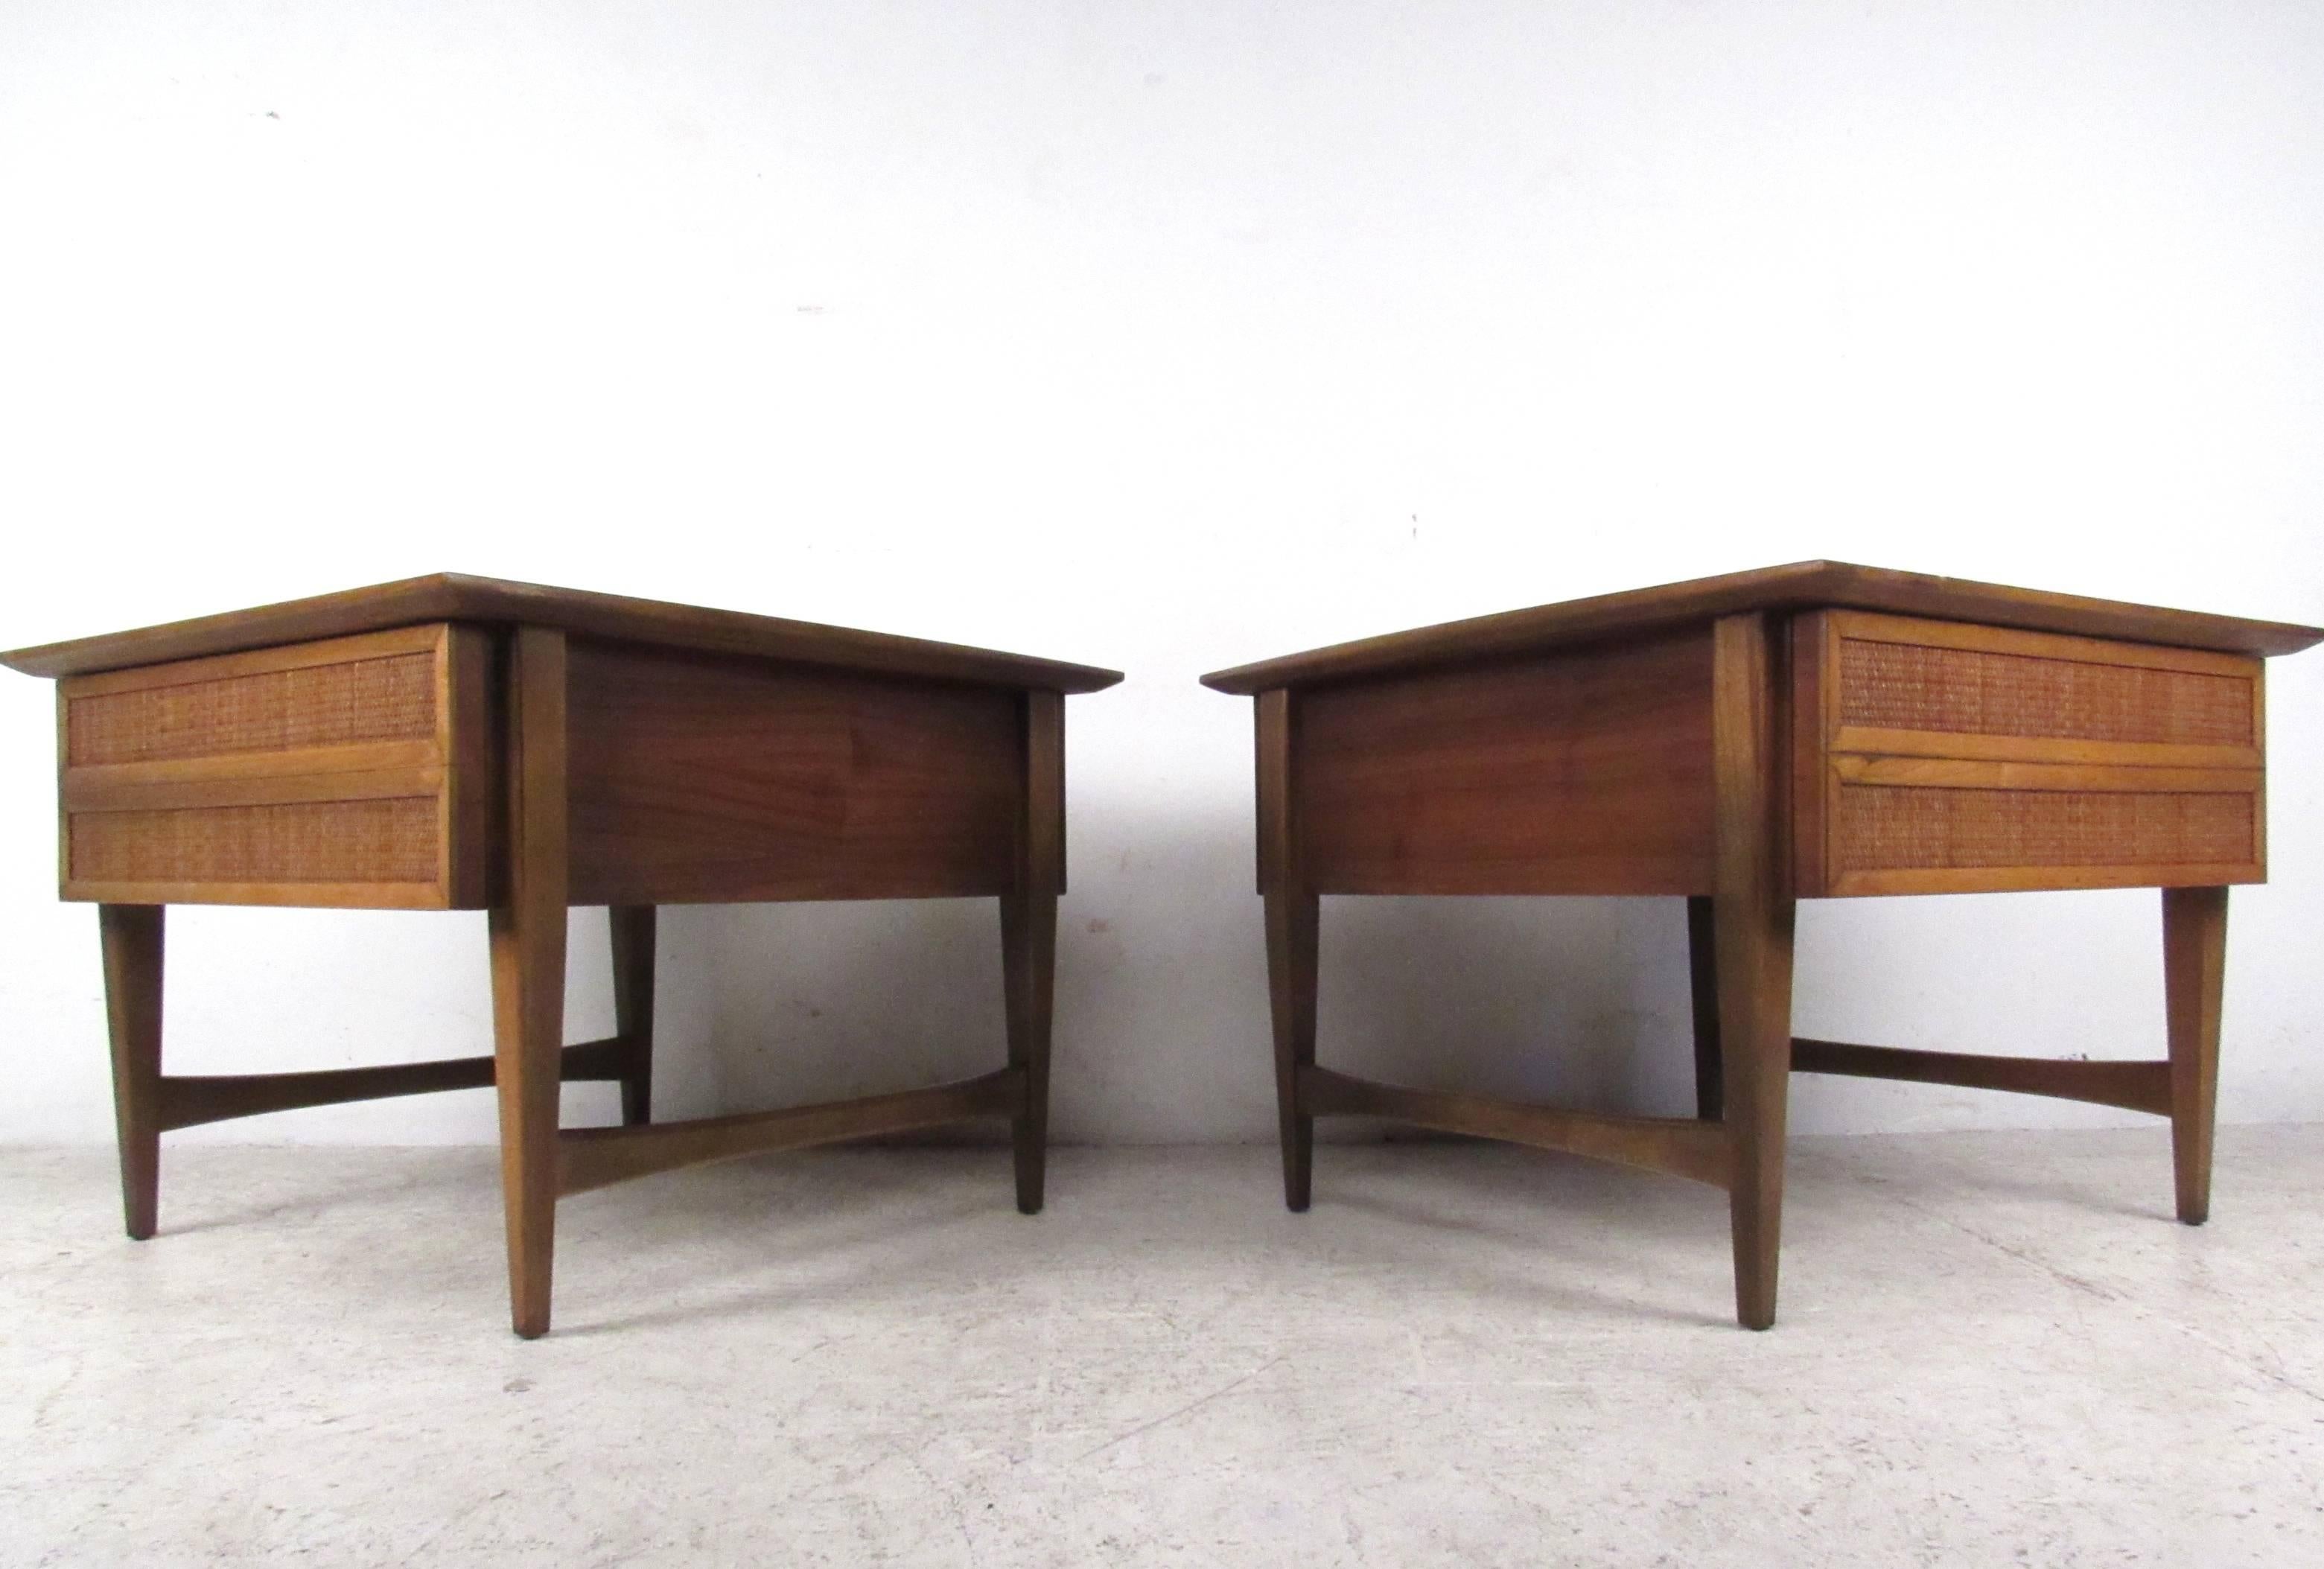 Dieses Vintage-Paar von Lane Furniture bietet geräumigen Stauraum, stilvoll verjüngte Beine und eine einzigartige Mid-Century-Ästhetik. Perfekte Beistelltische für jede Einrichtung; bitte bestätigen Sie den Standort des Artikels (NY oder NJ).